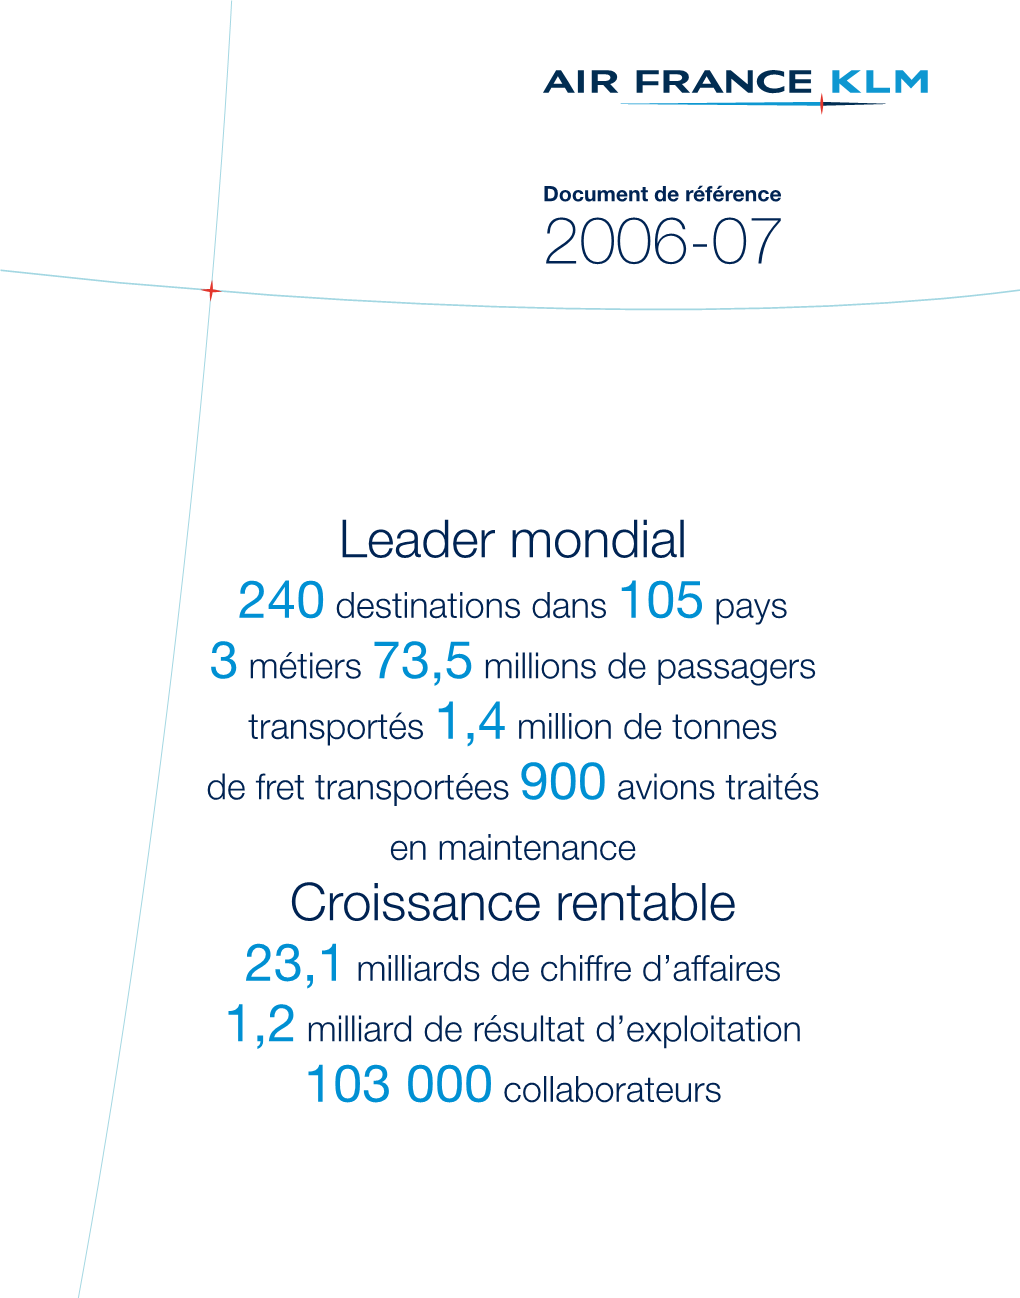 Document De Référence Air France-KLM 2006